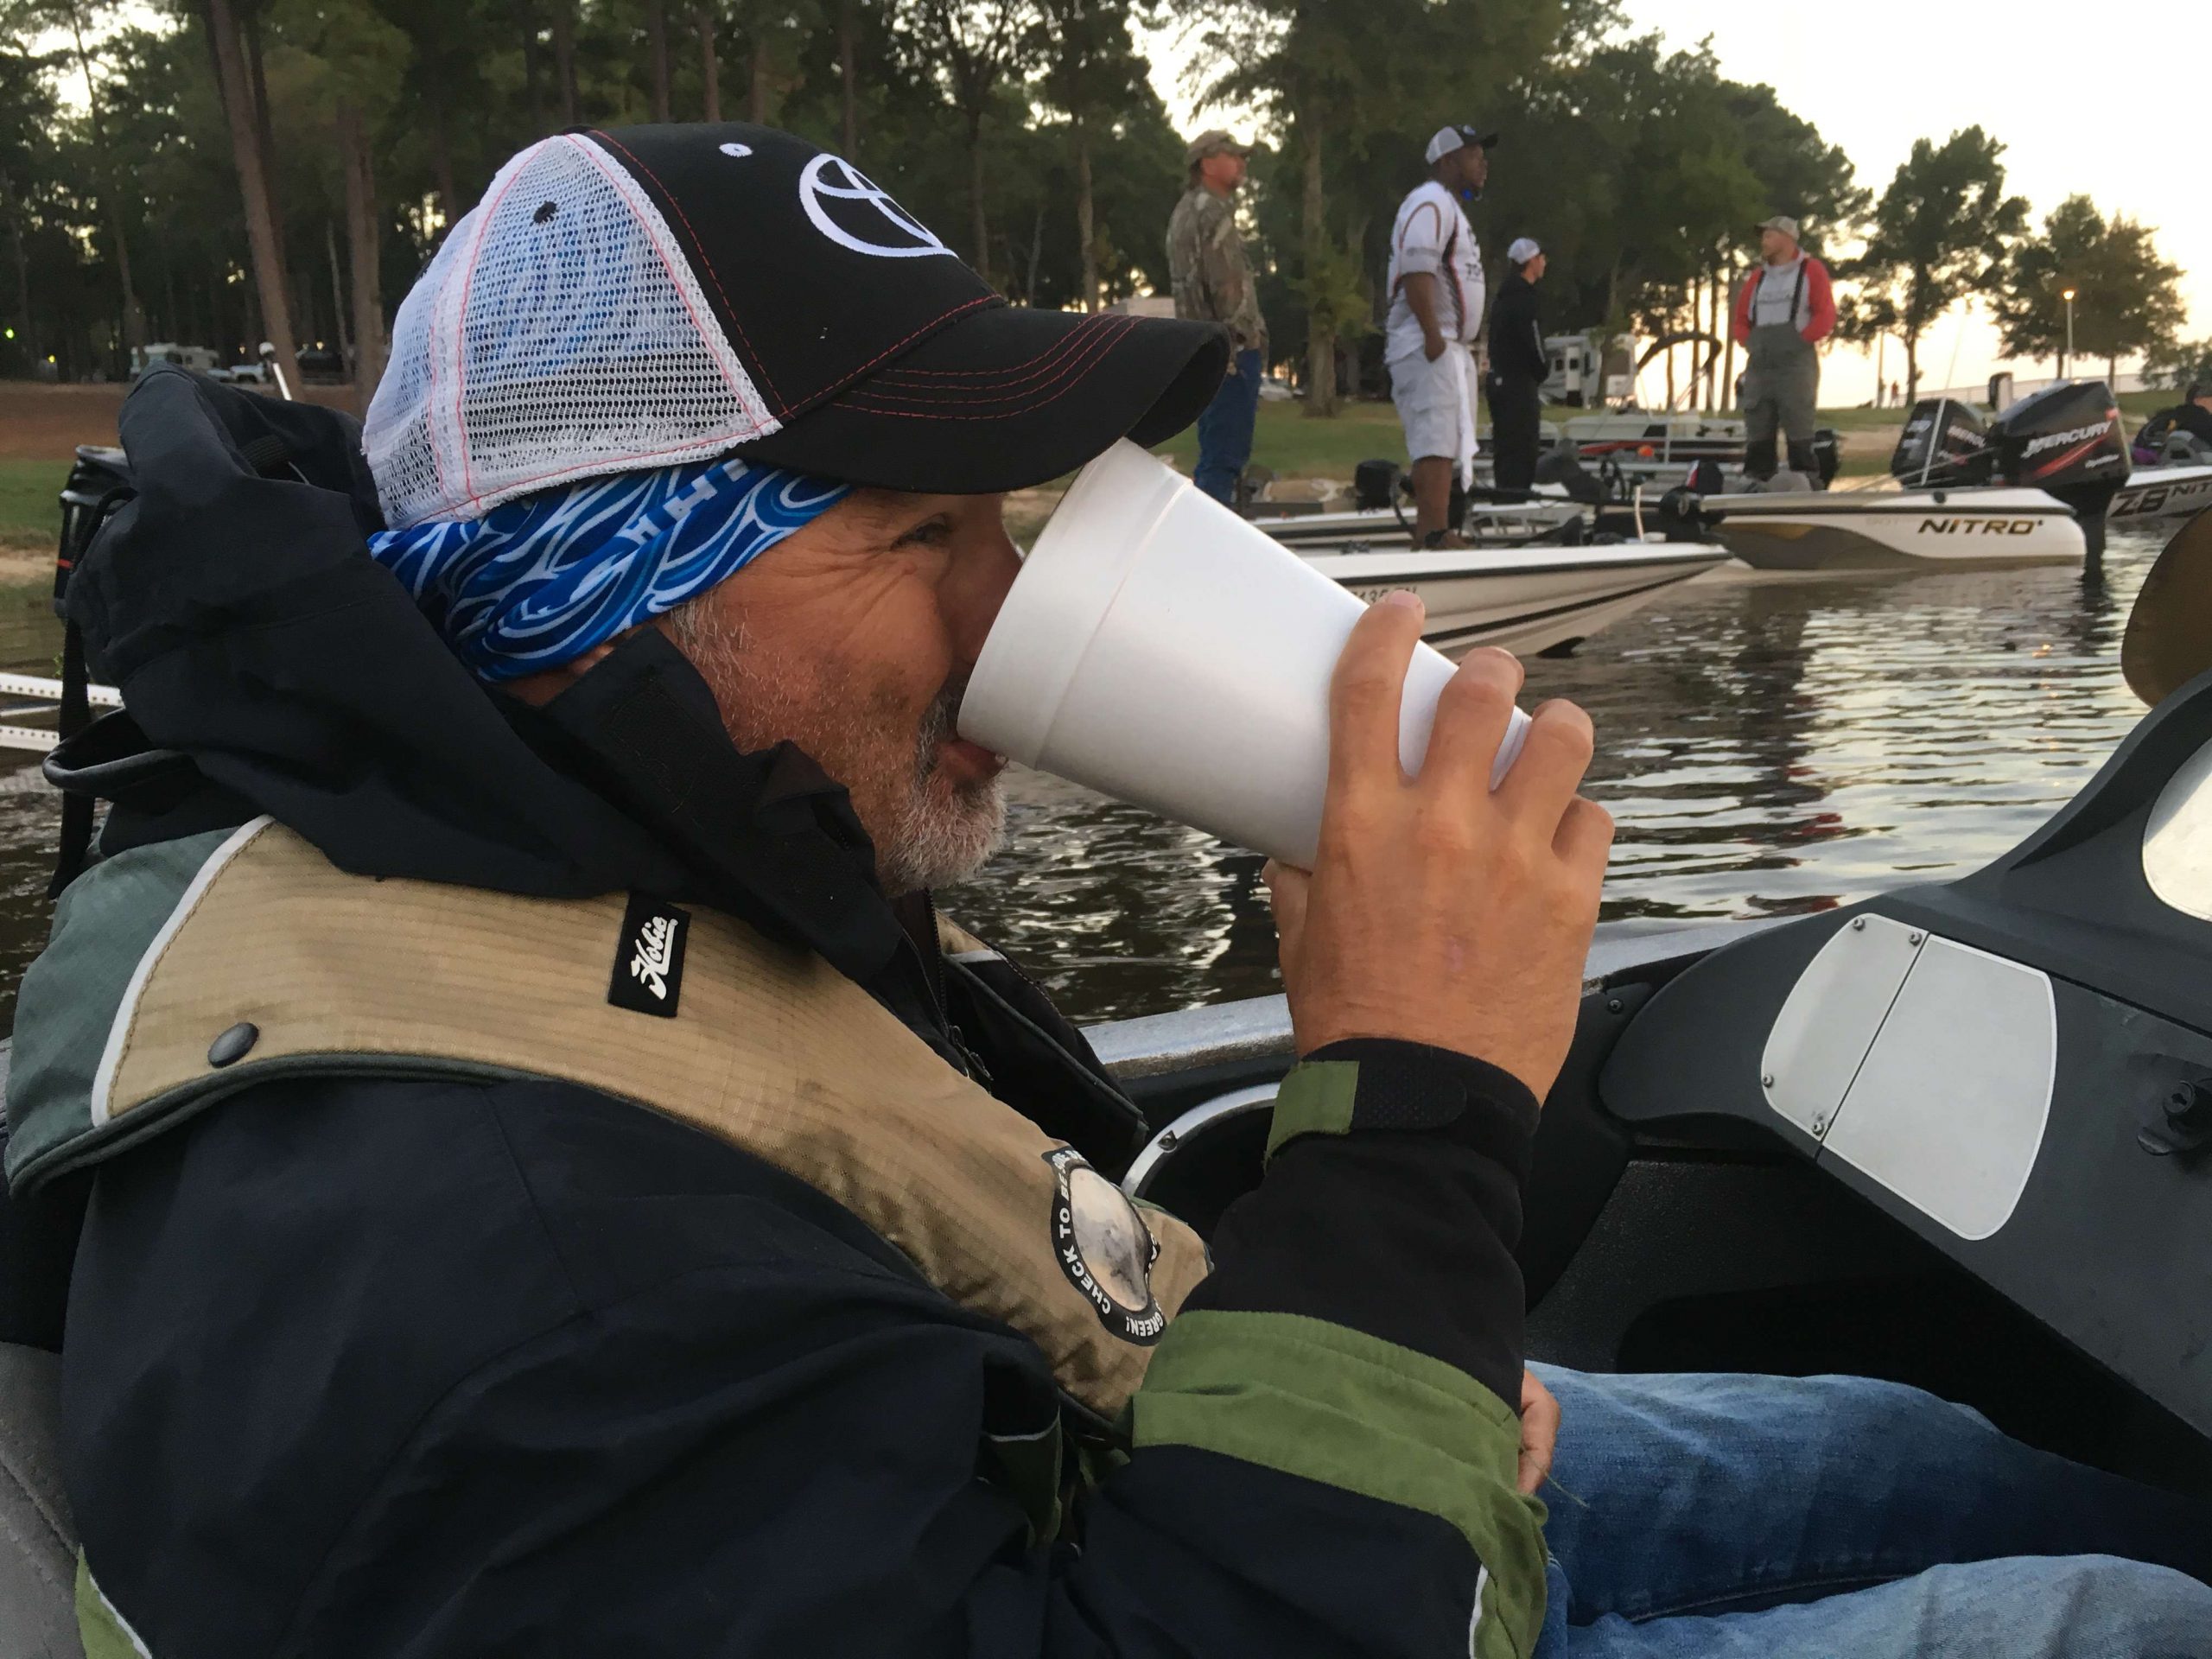 Sunday, 7:05 a.m. â Coffee on the boat always tastes better!